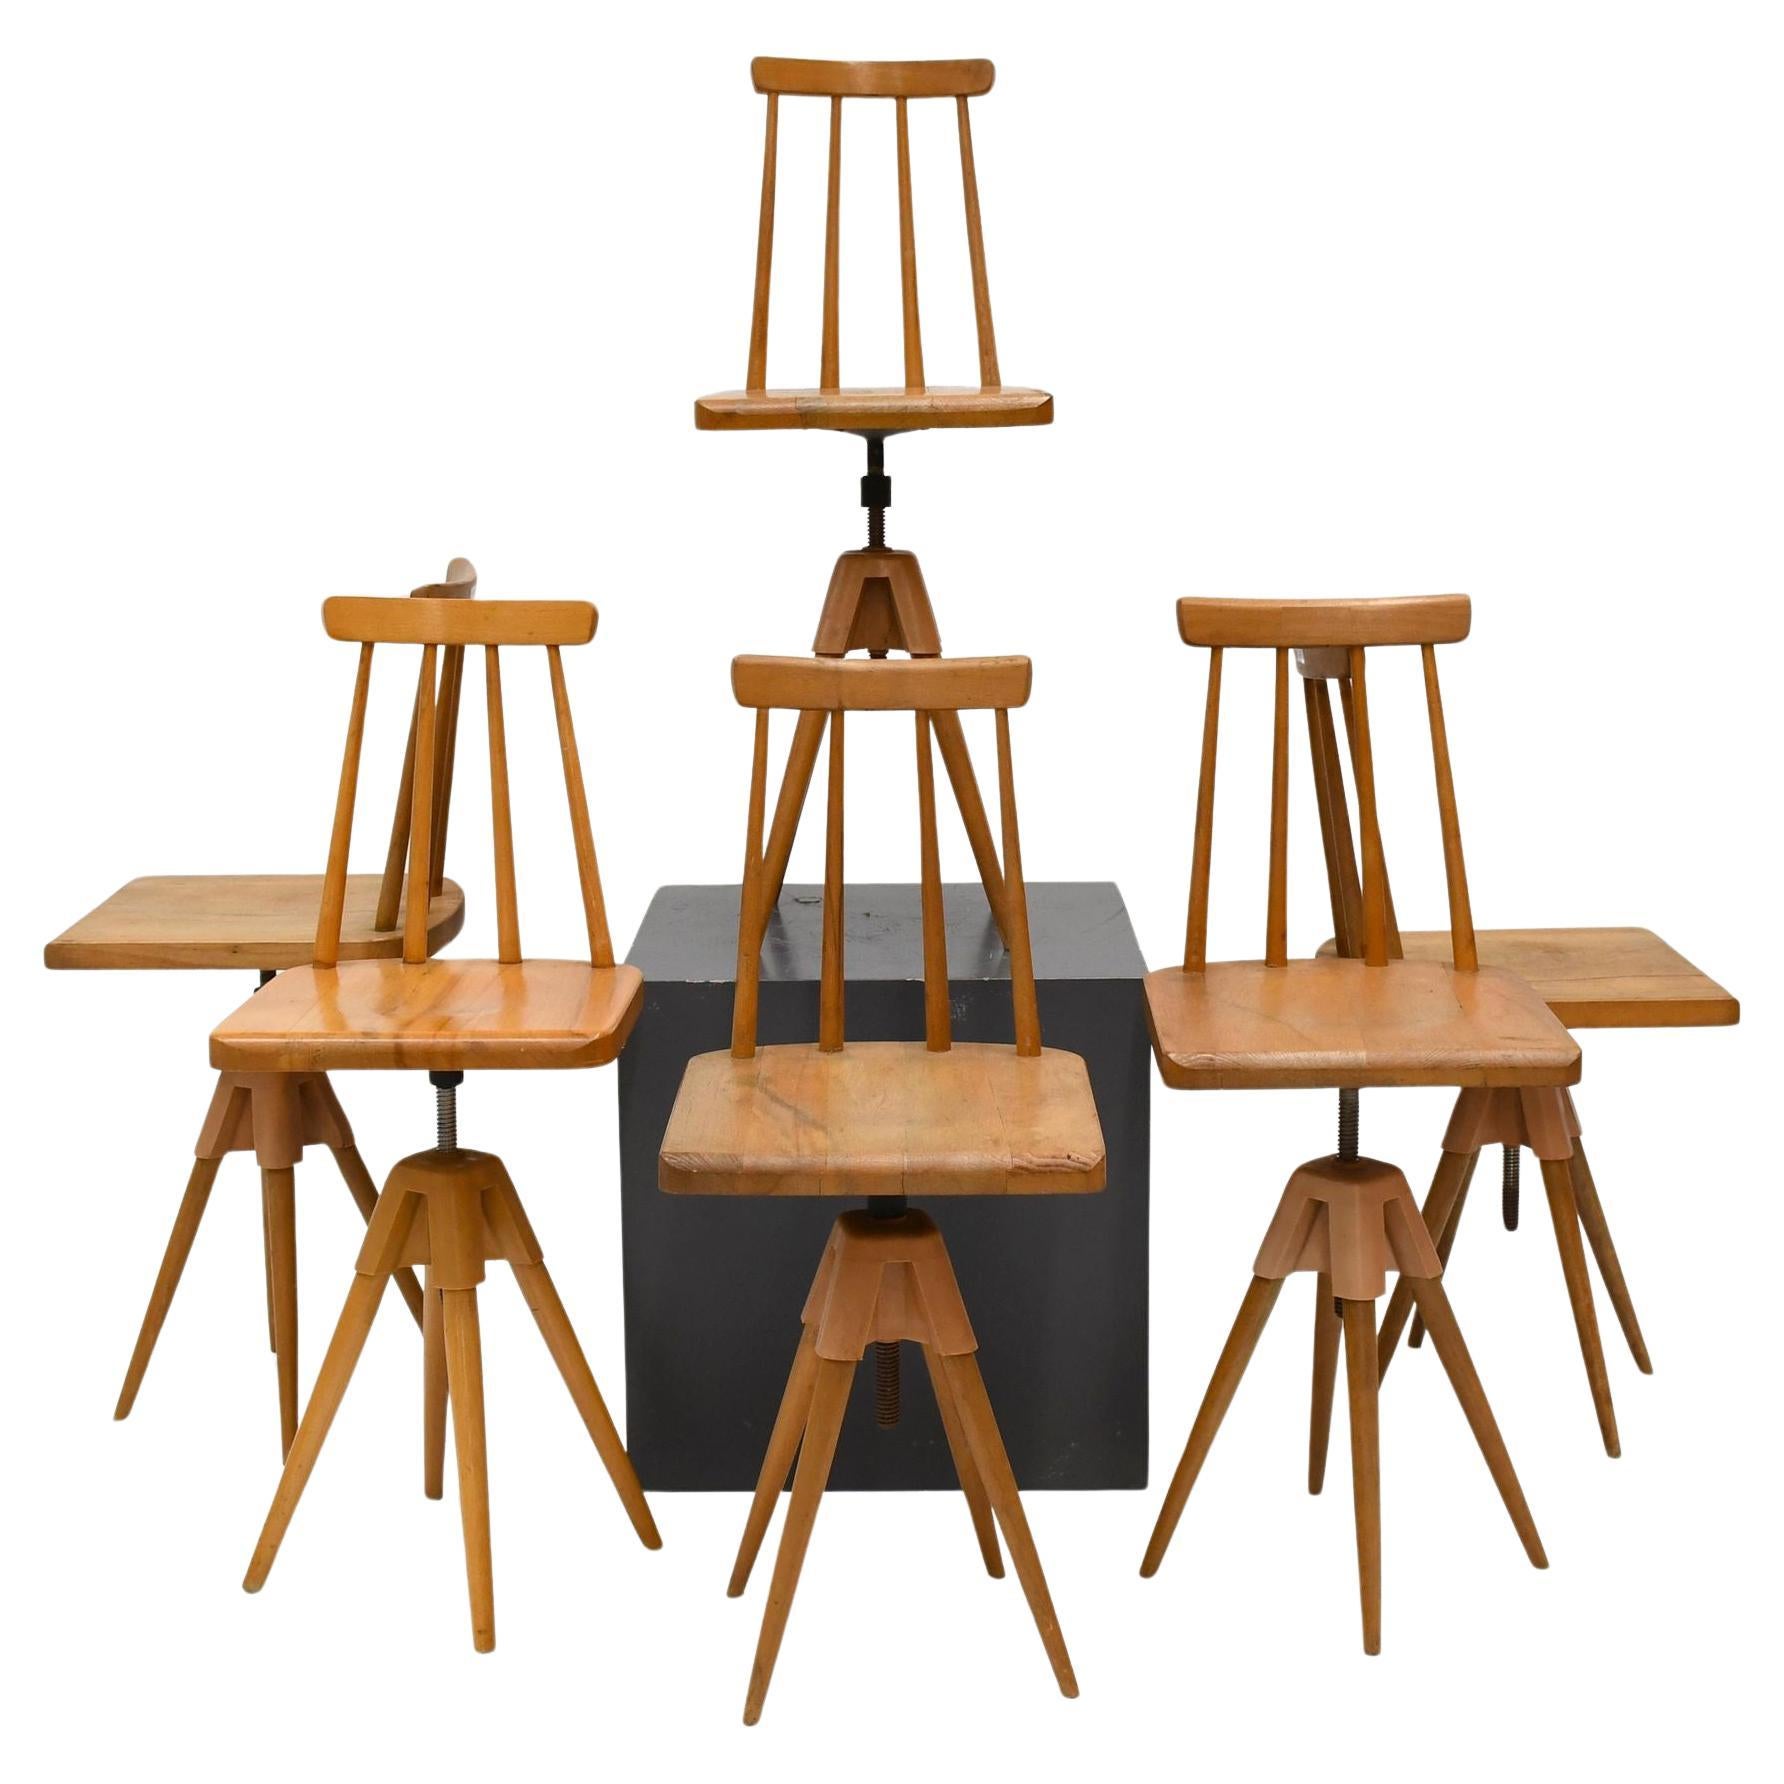 Dänische handgeschnitzte, geometrische, drehbare Vintage-Stühle aus Buchenholz, 20. Jahrhundert